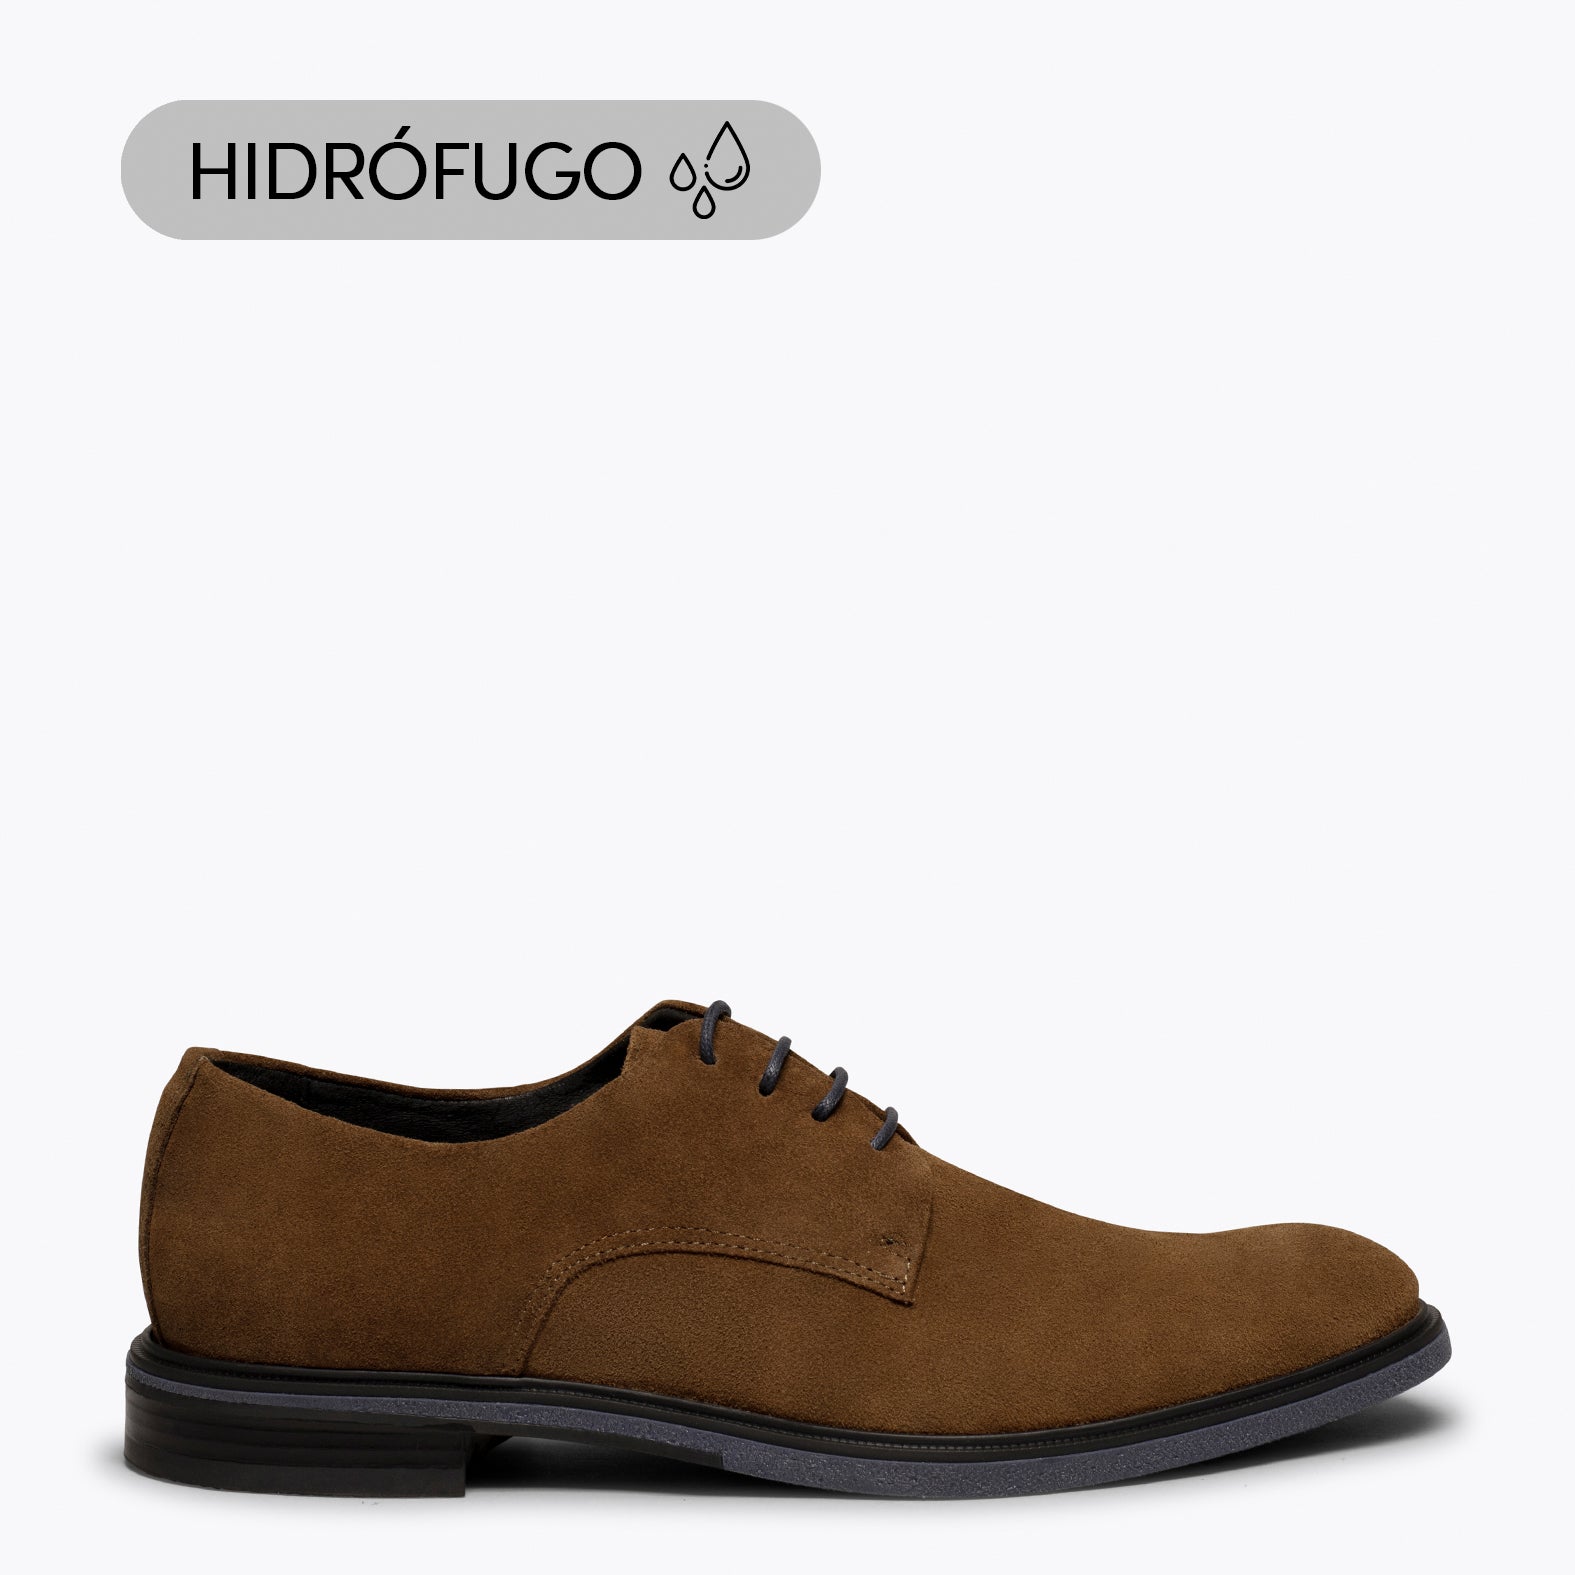 HARVARD- Zapato de hombre CUERO hidrófugo